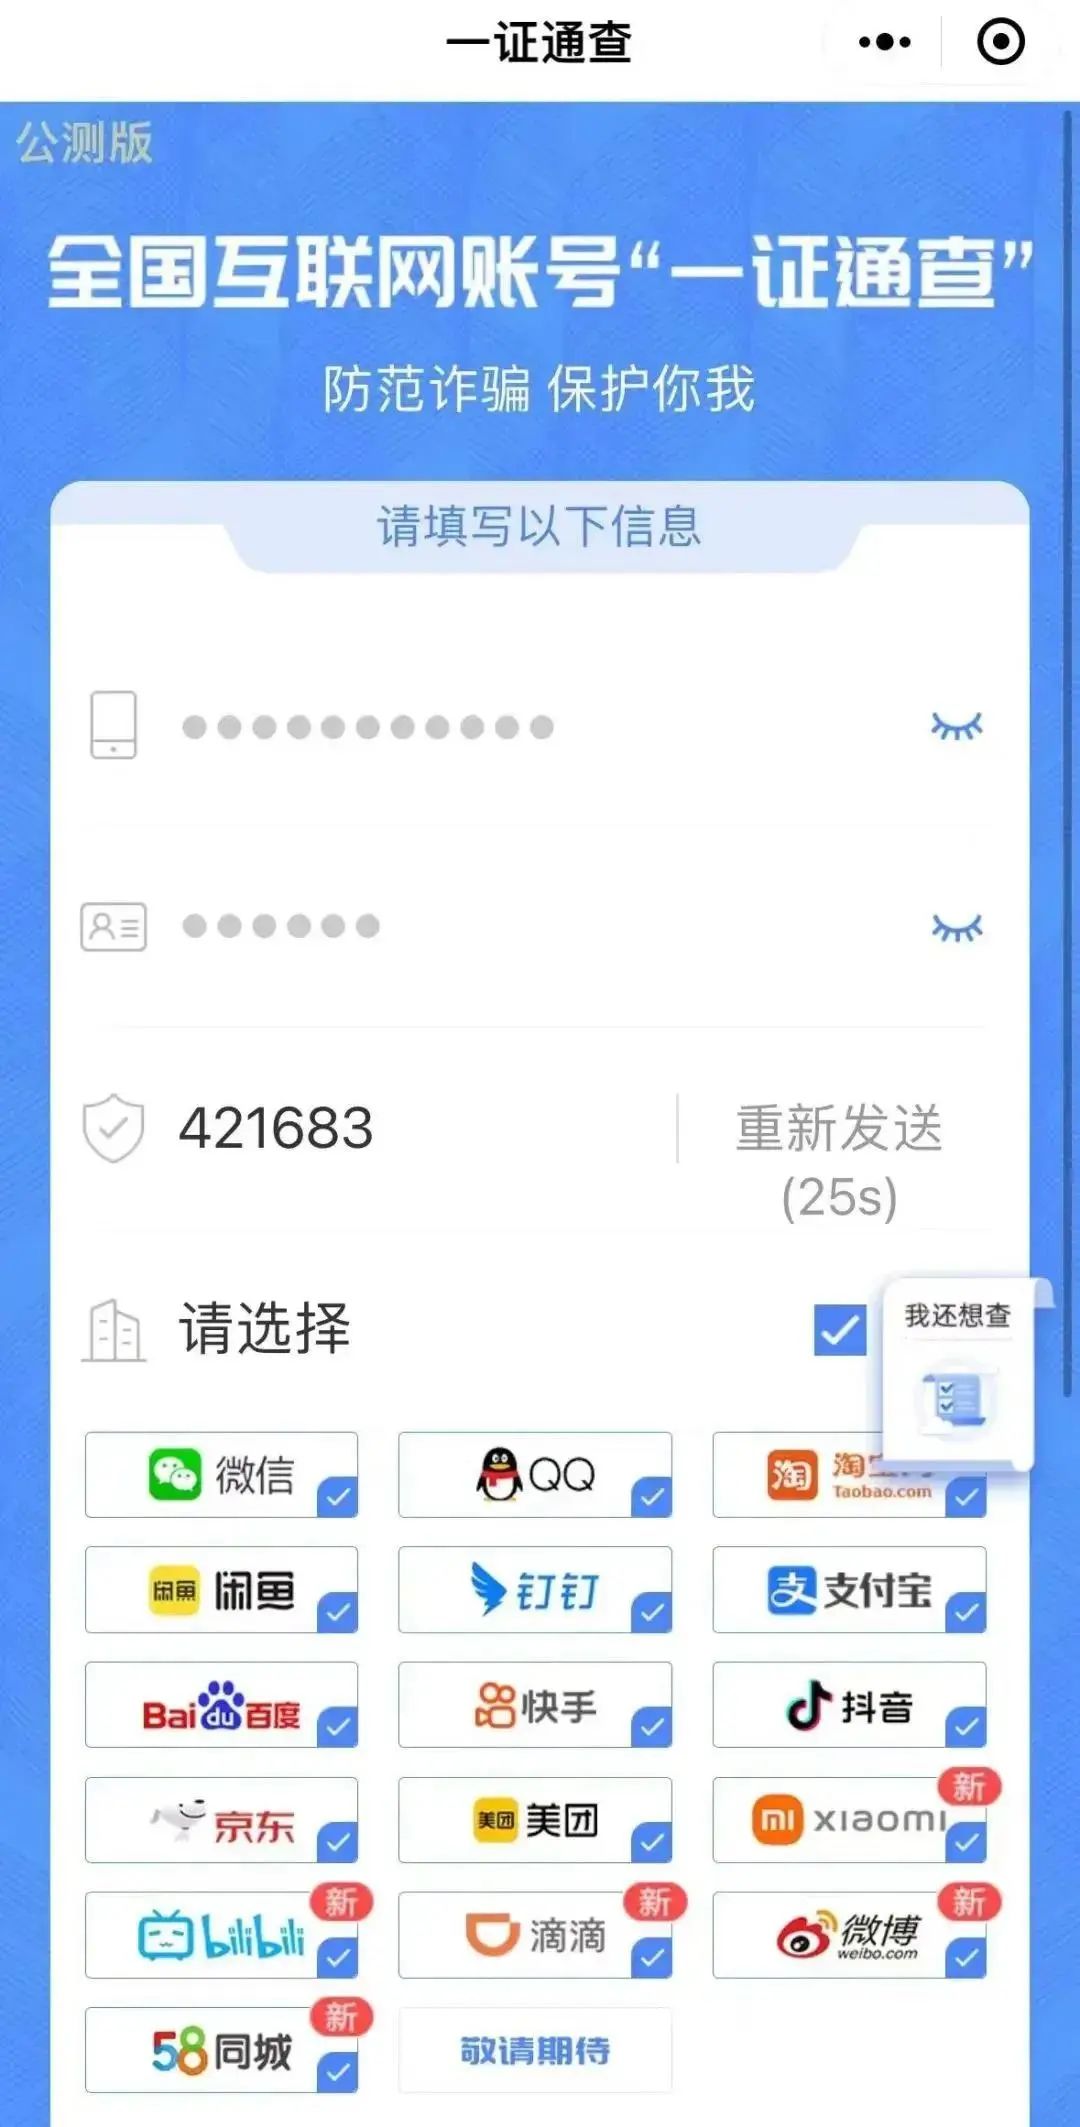 中国联通客服电话图片